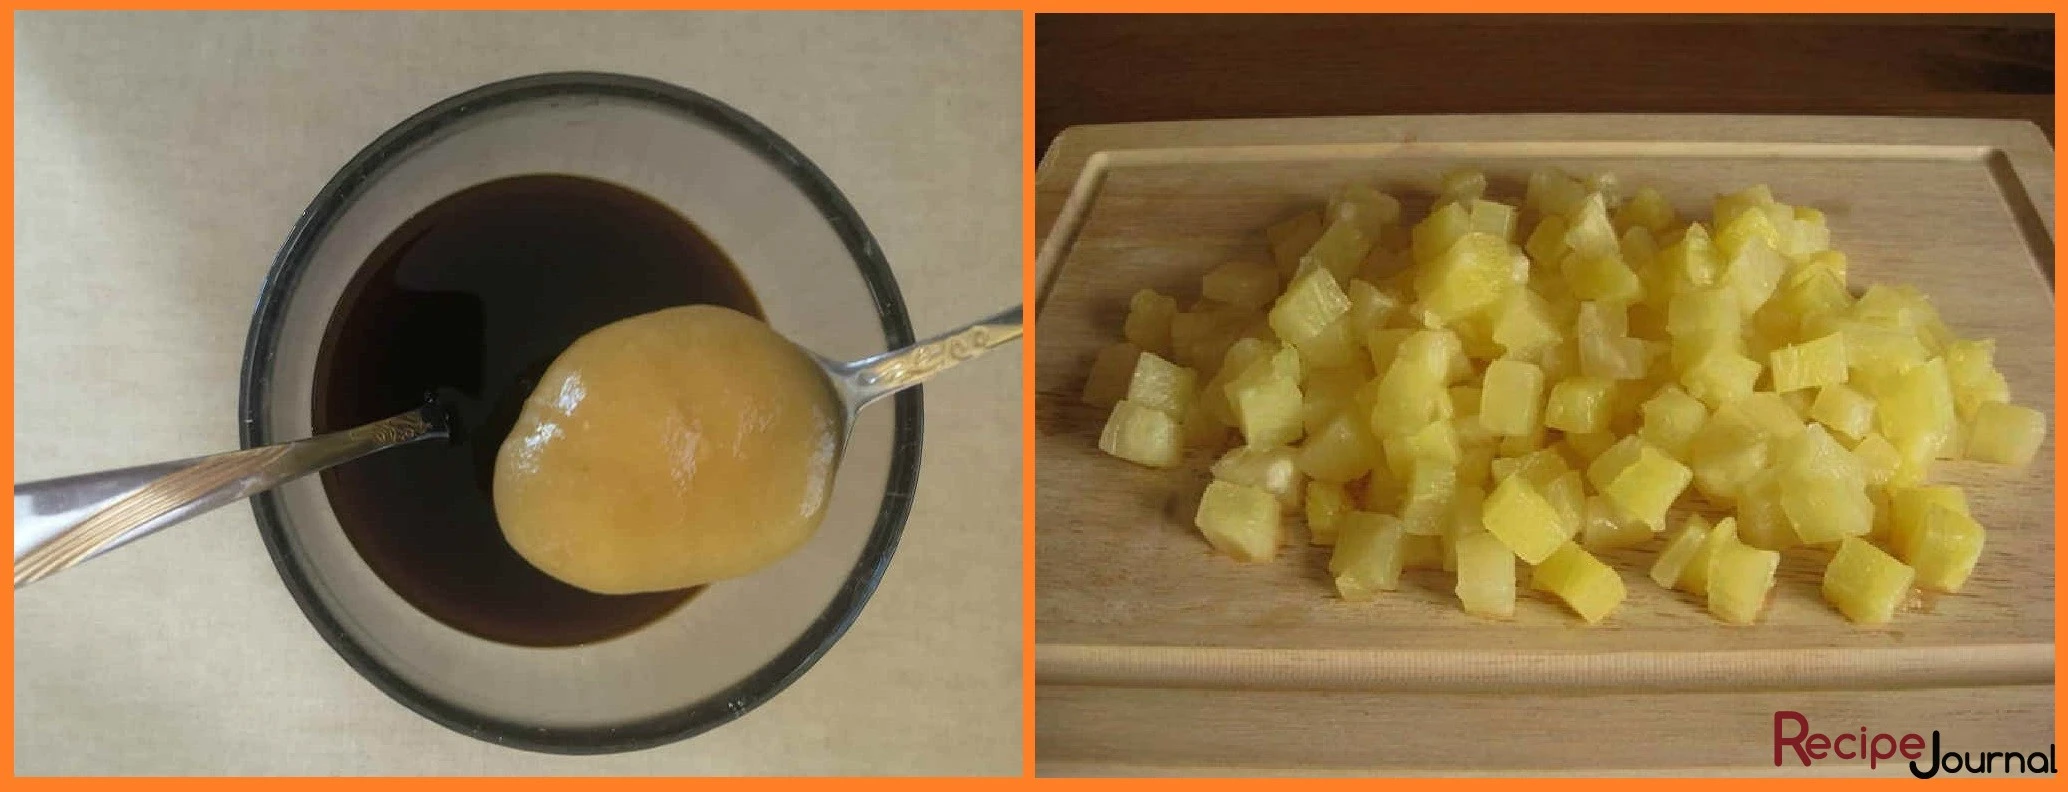 В миске смешиваем соевый соус, мед, уксус, кетчуп и сок от ананаса, перемешиваем и вливаем в овощи на сковороде. Консервированный ананас нарезаем кубиком.